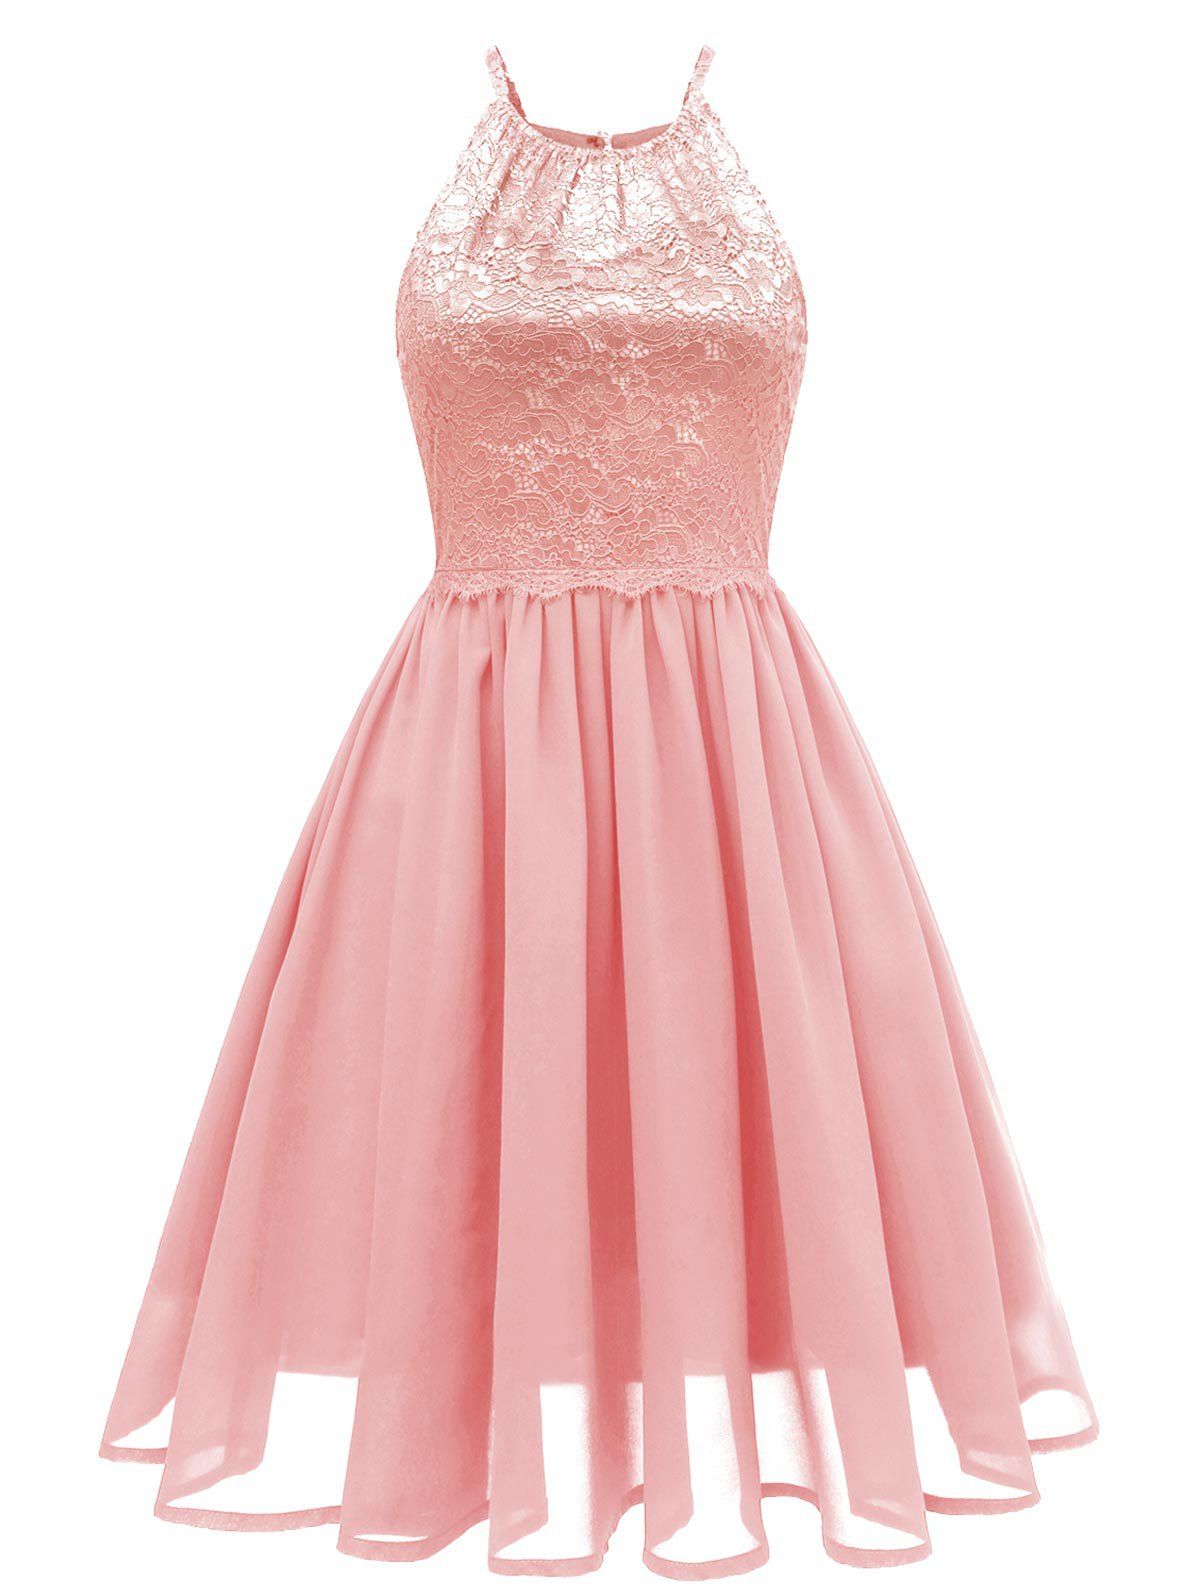 Lace Insert Cutout Sleeveless Dress - LIGHT PINK M